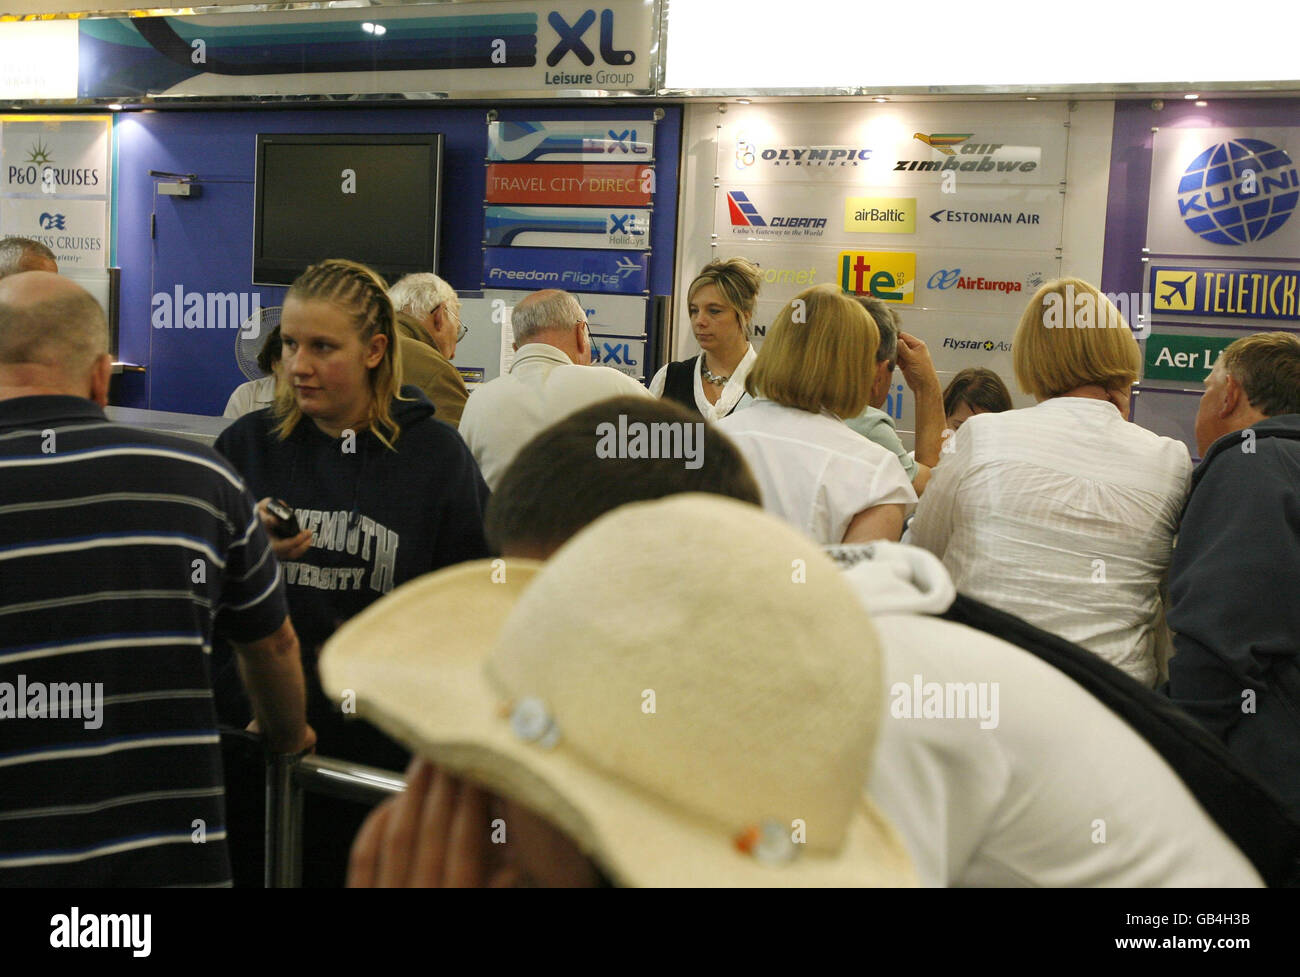 Les voyageurs attendent des informations à l'aéroport de Gatwick, West Sussex. Banque D'Images